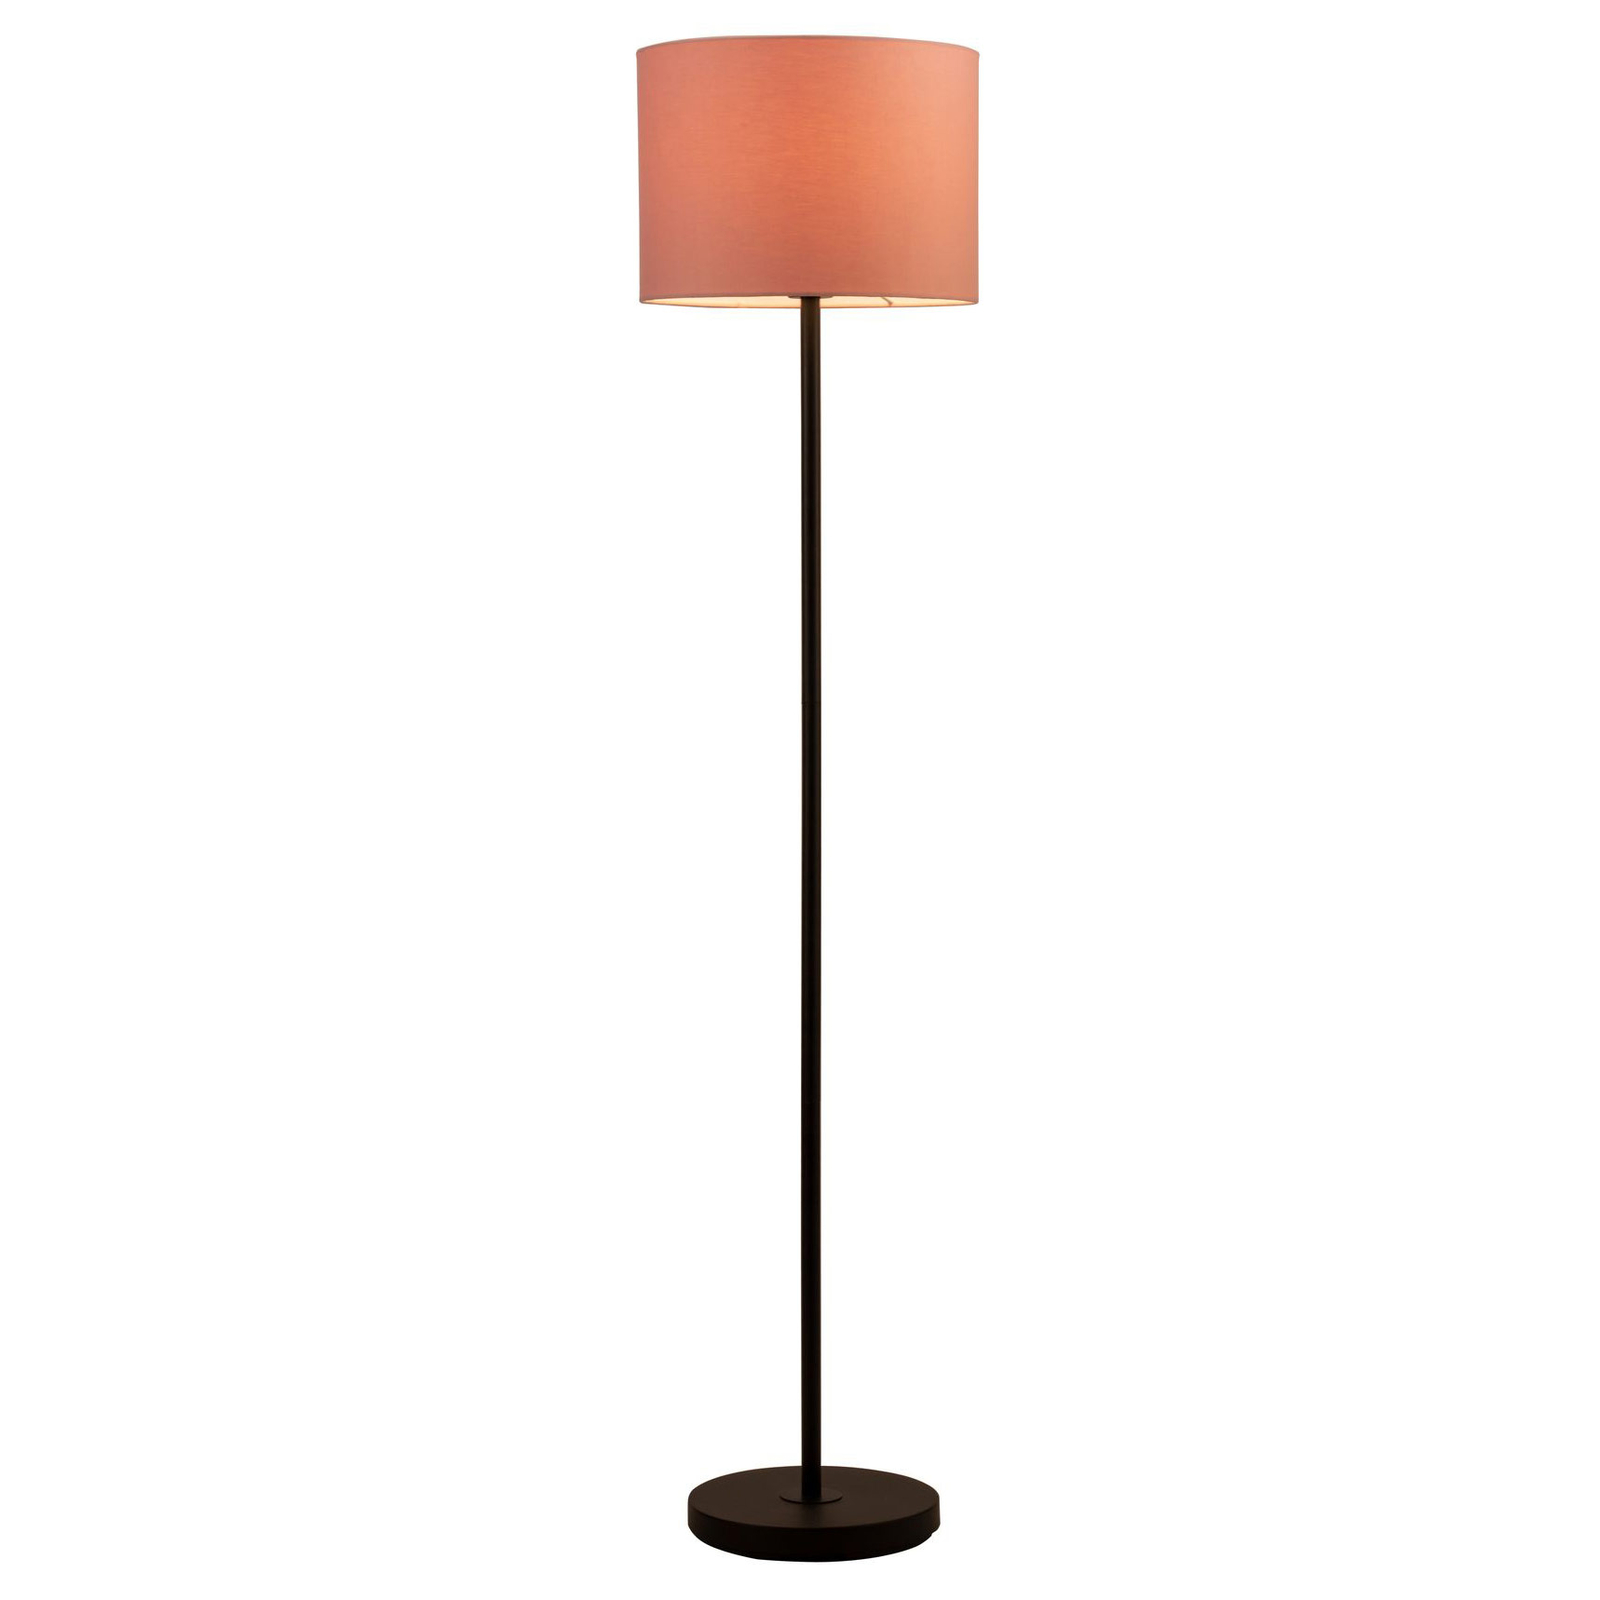 Pauleen Grand Reverie gulvlampe i rosa/sort